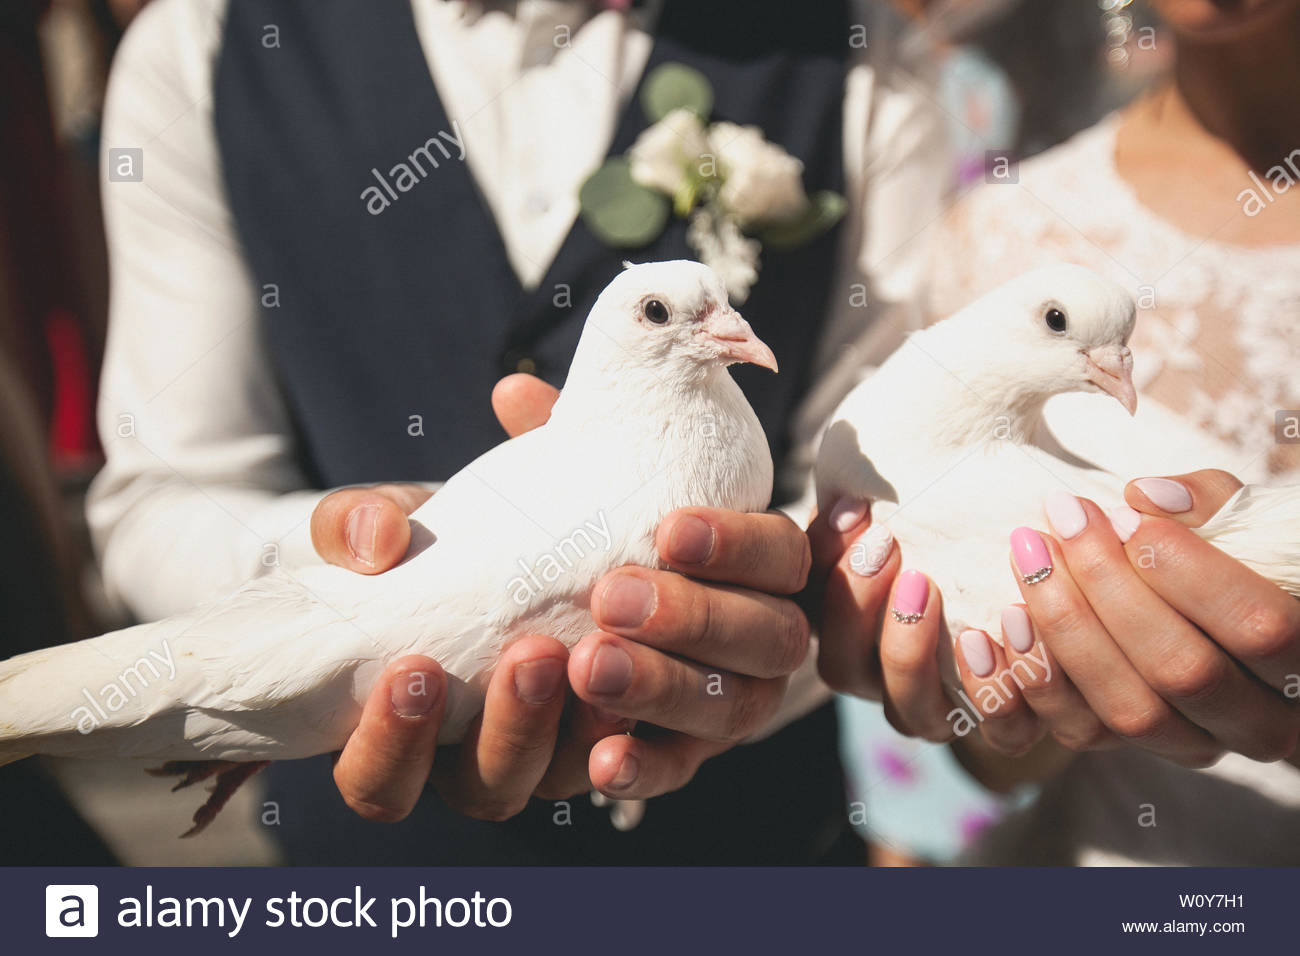 Жених и невеста с голубями